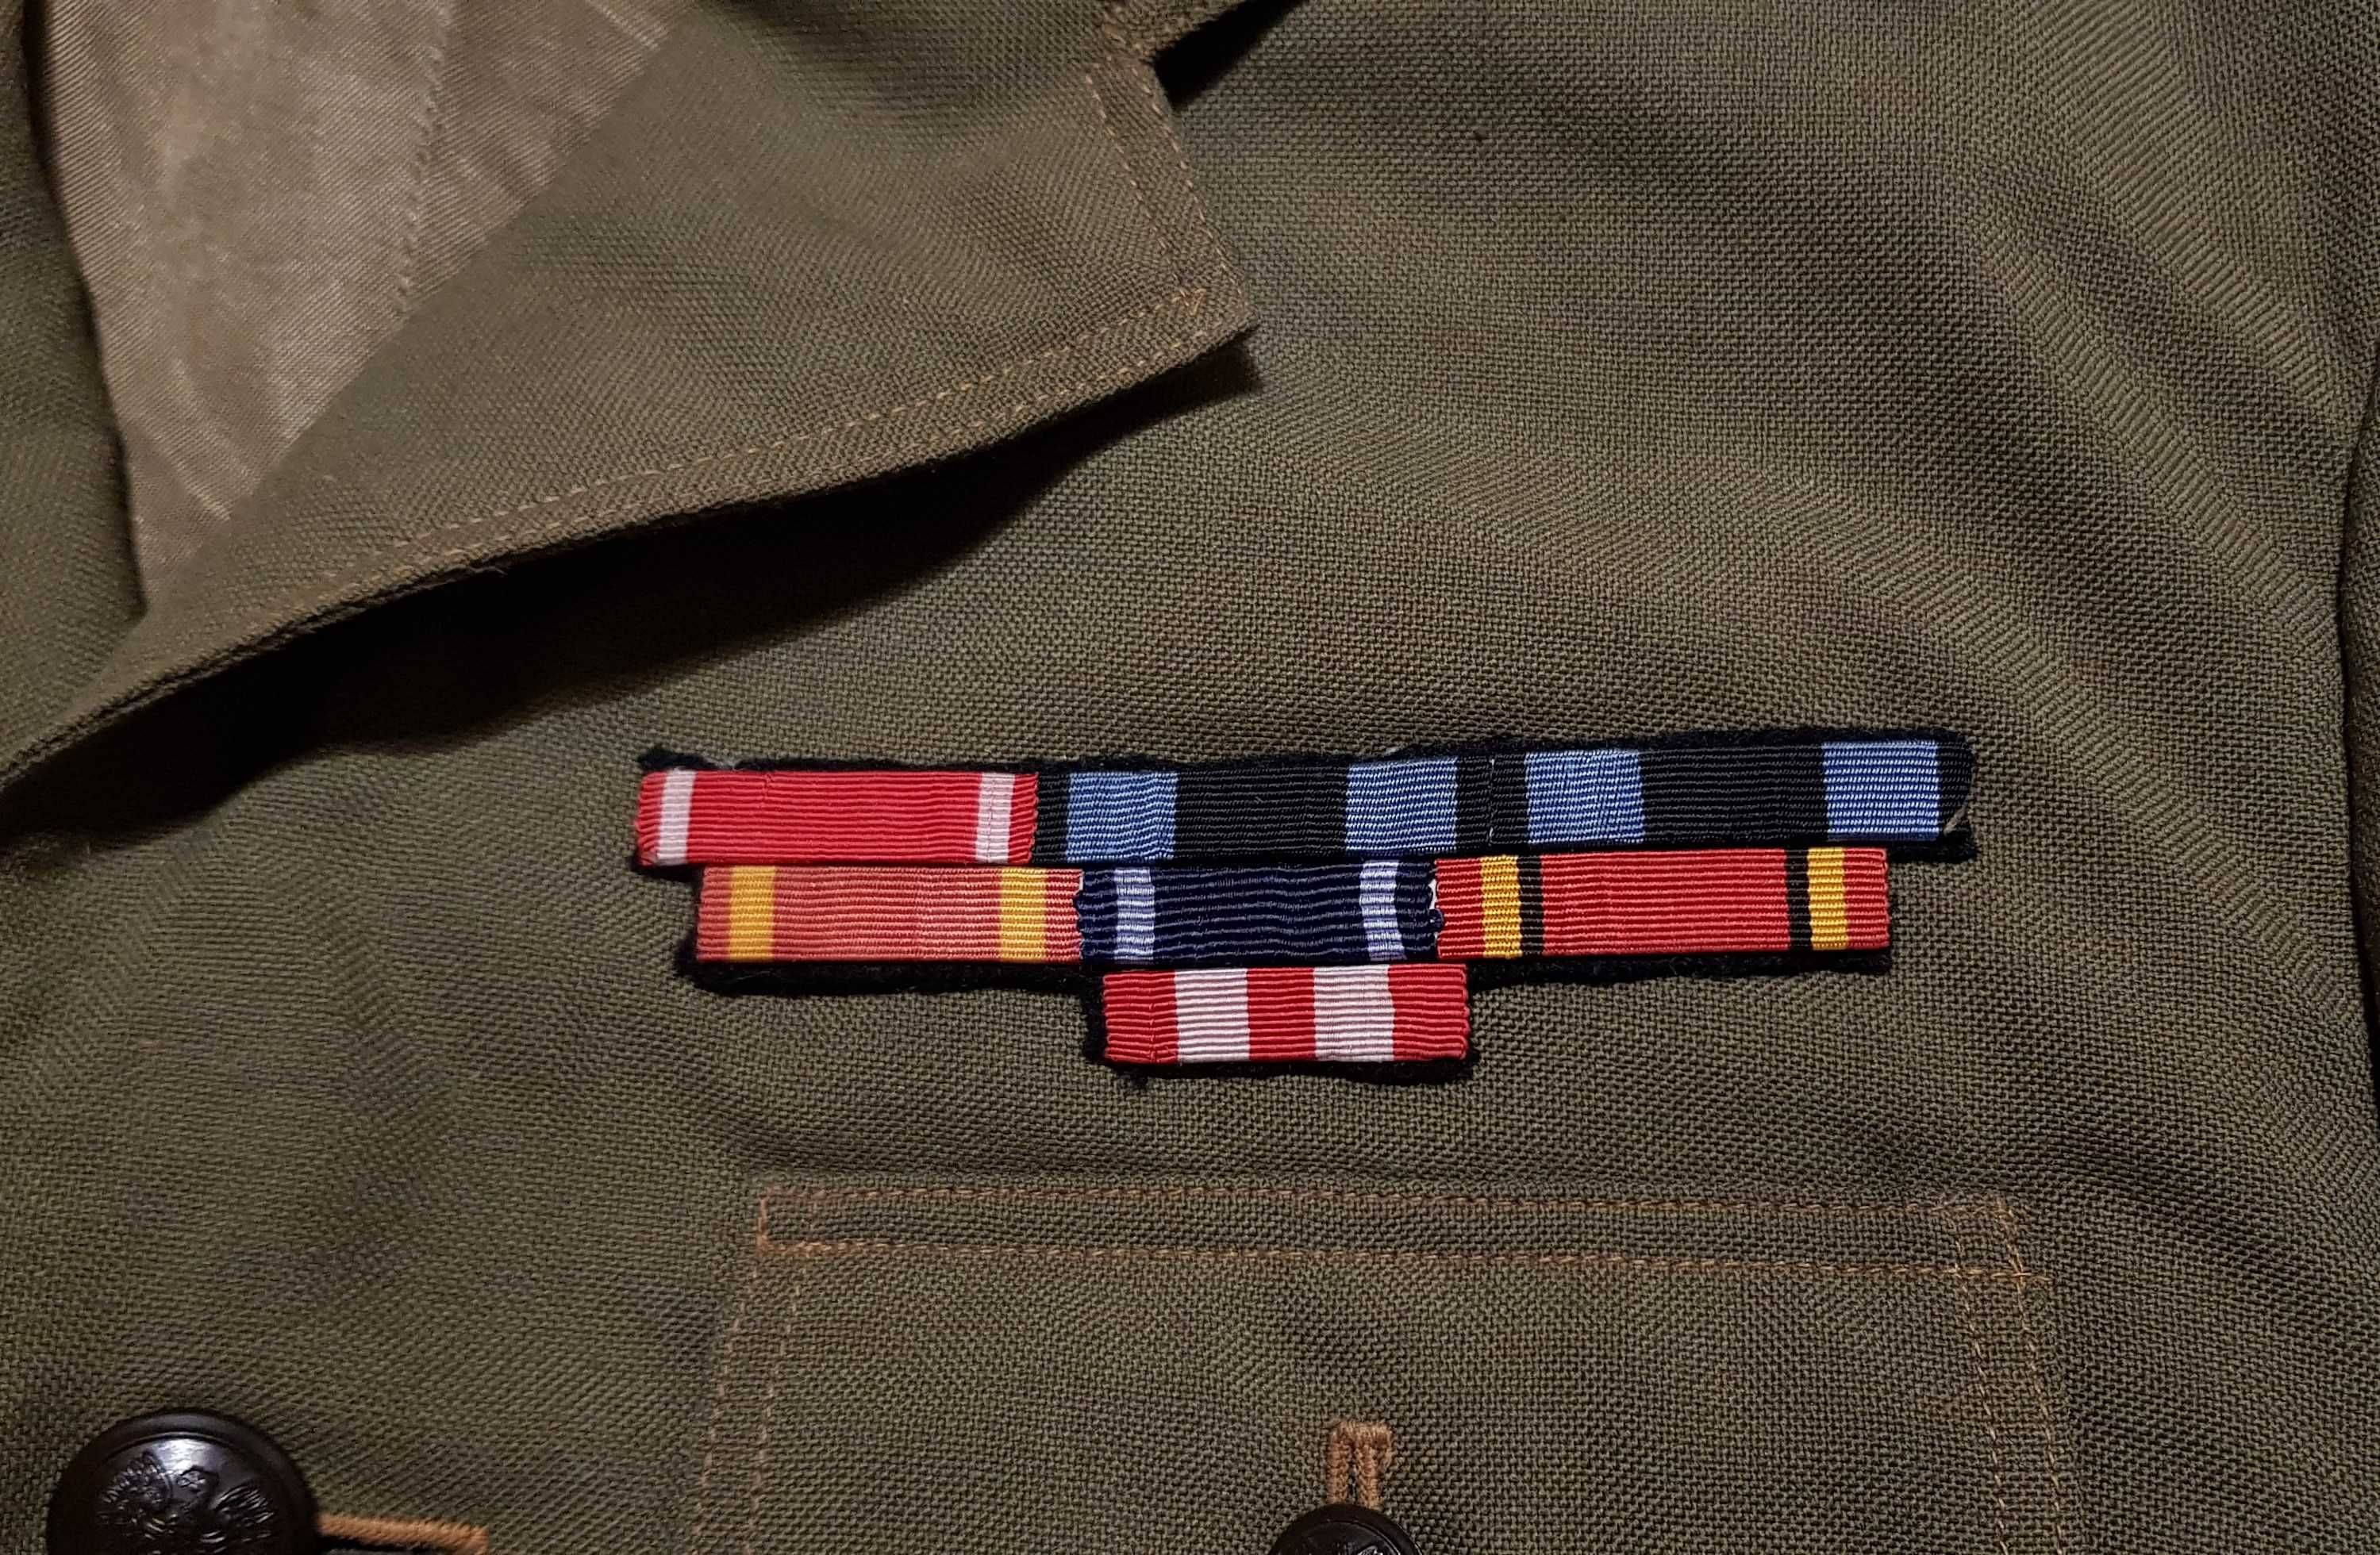 Kurtka munduru galowego po weteranie II wojny światowej